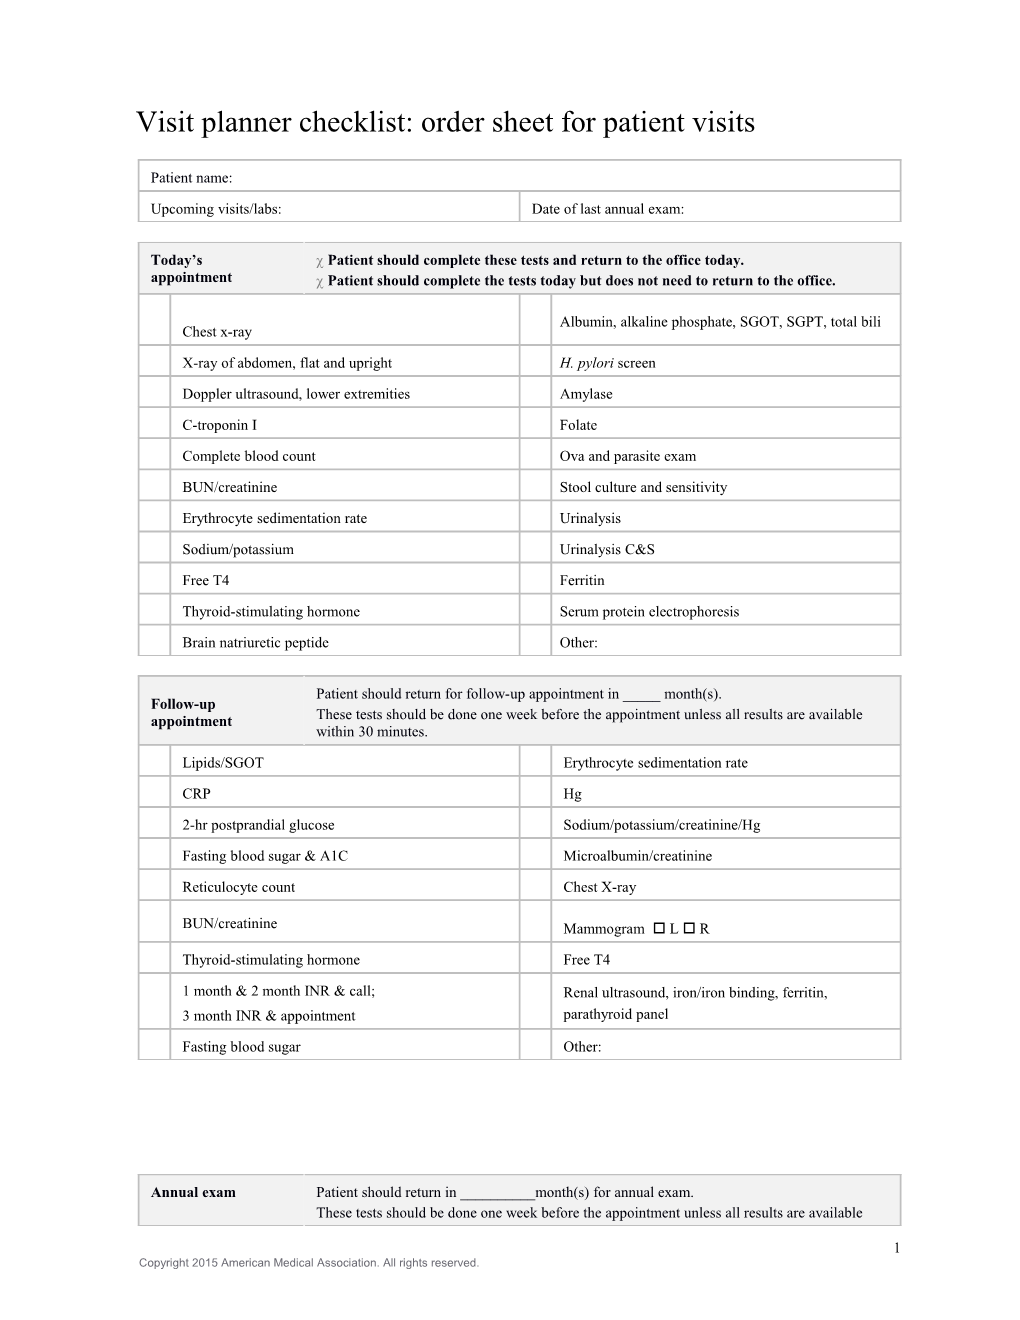 Visit Planner Checklist: Order Sheet for Patient Visits